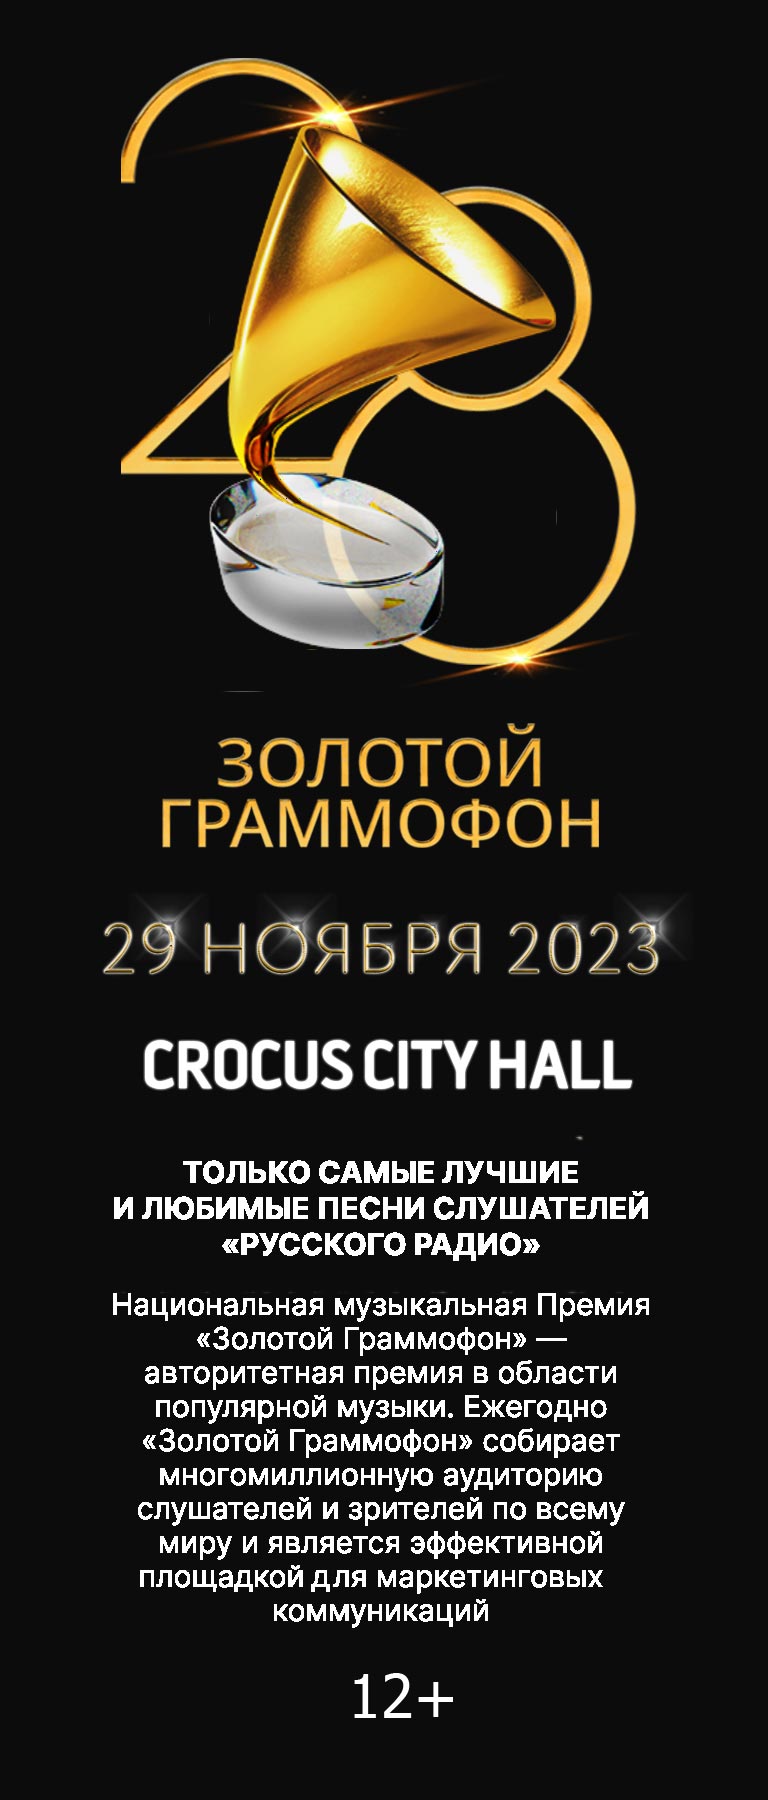 Купить Билеты на концерт Золотой Граммофон 2023 в Крокус Сити Холл